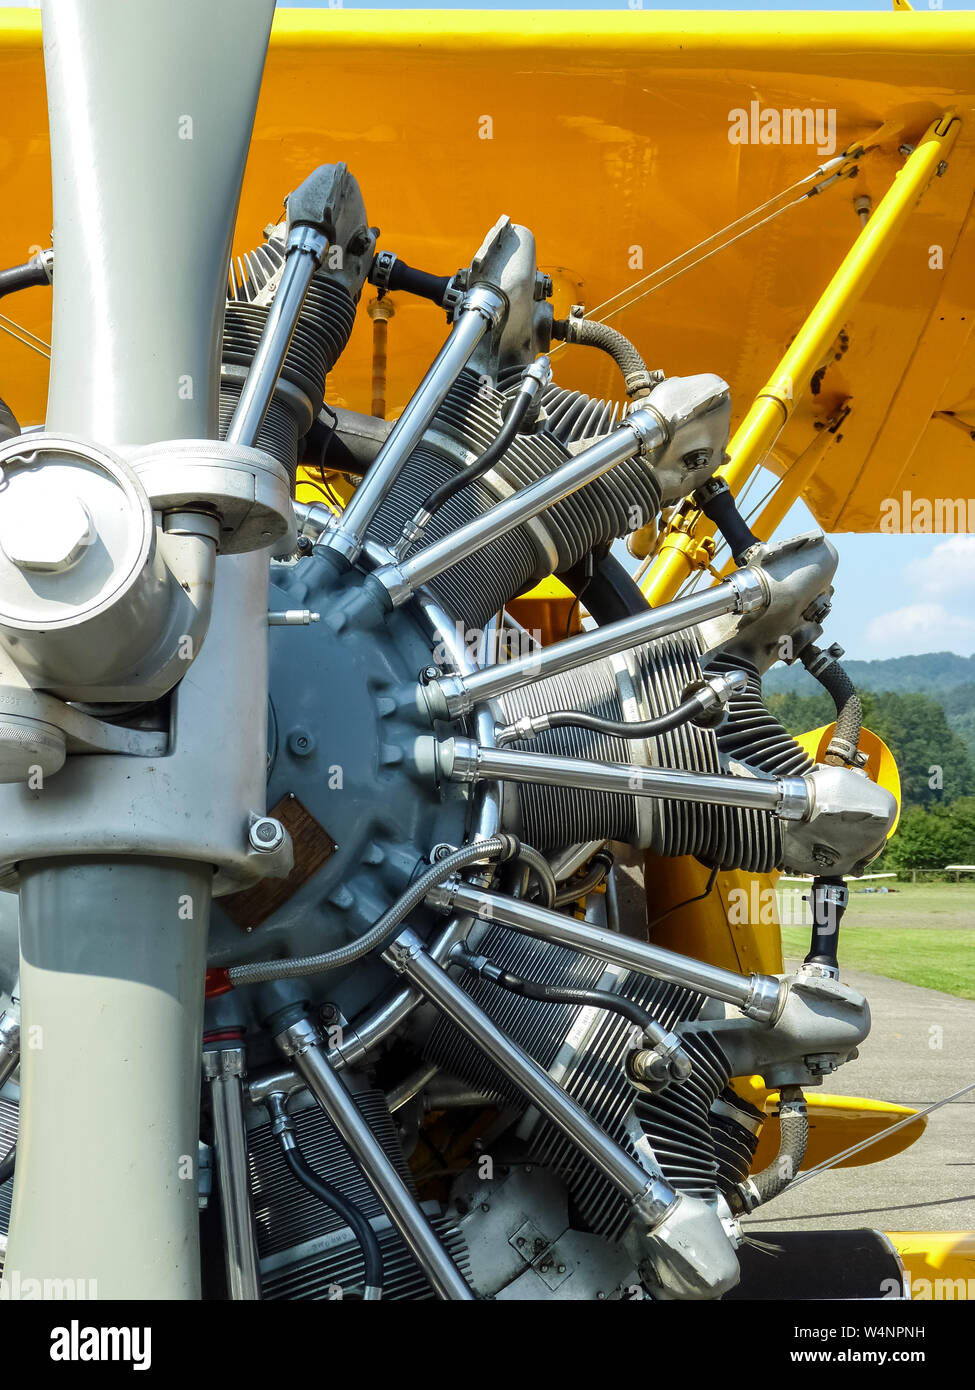 Boeing Stearman Modell 75 Doppeldecker während der Flugschau auf einem  Flugplatz in der Schweiz Stockfotografie - Alamy